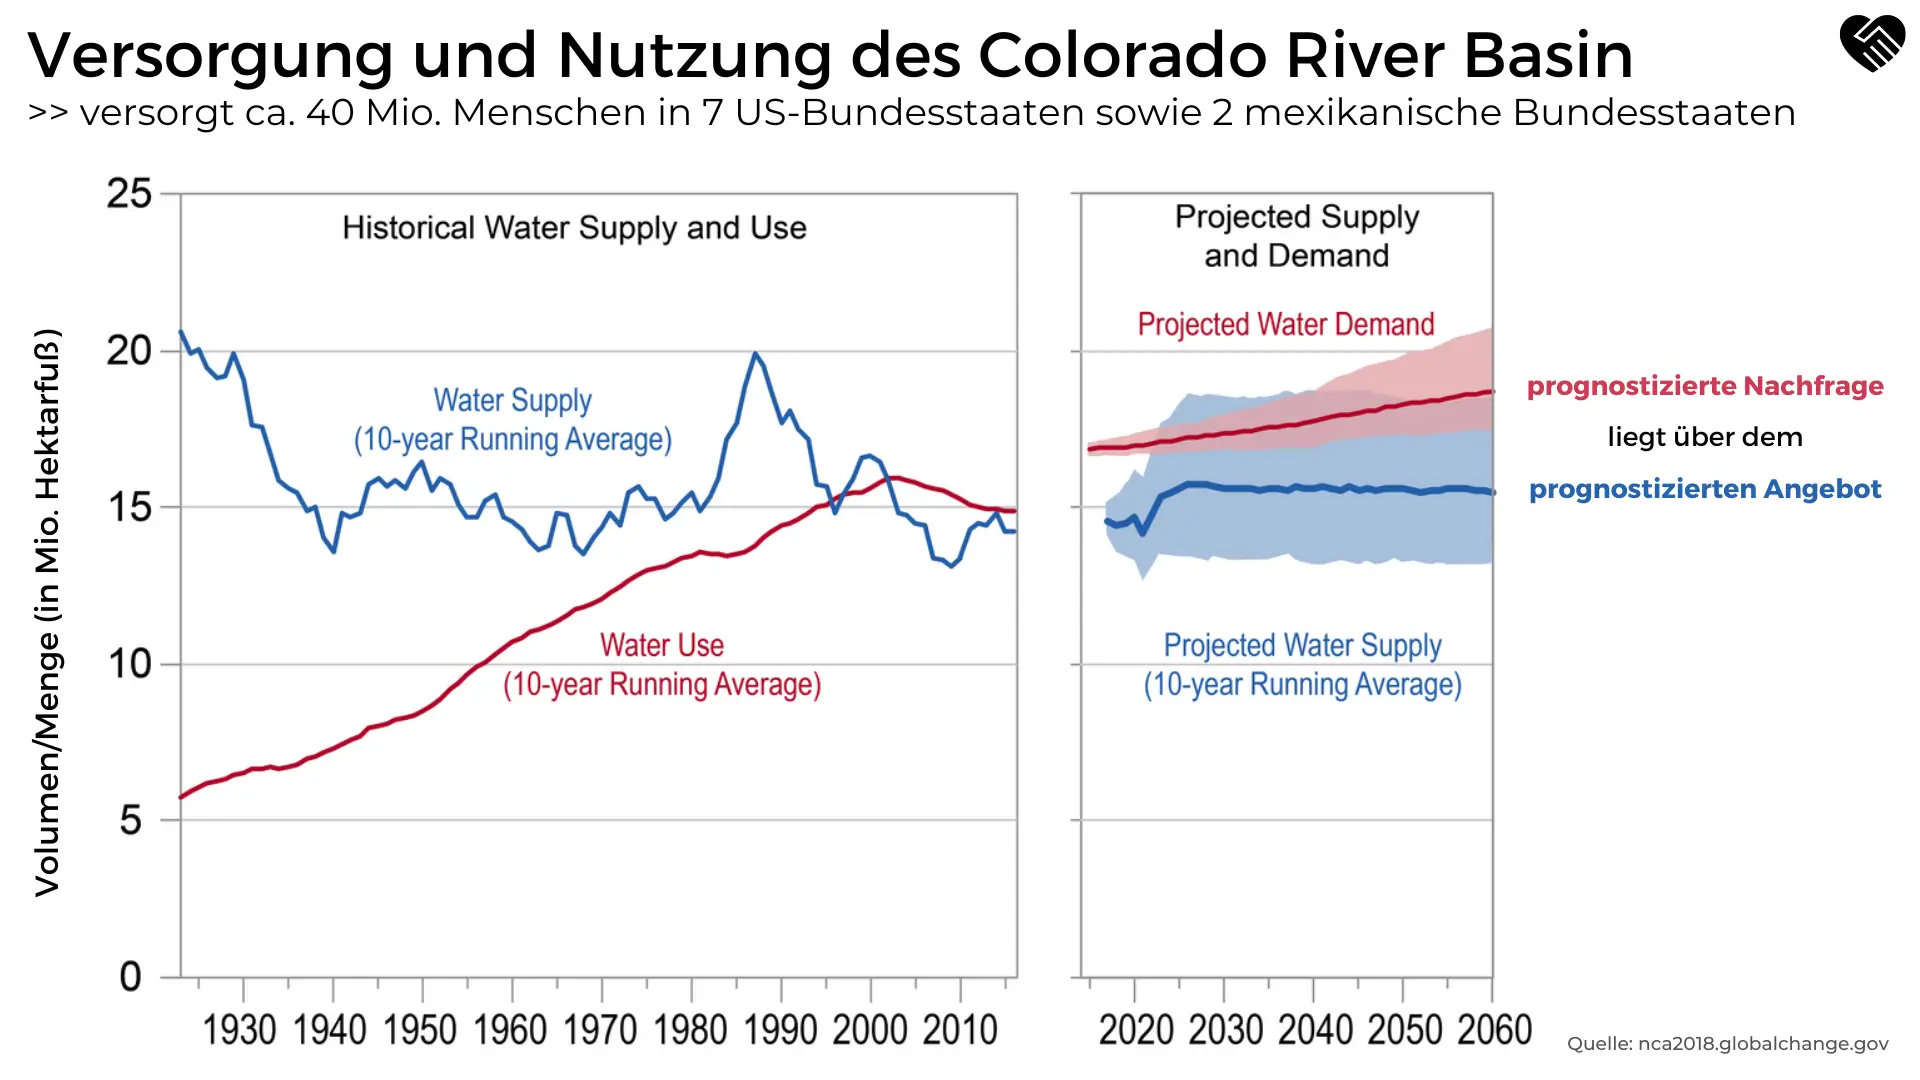 Versorgung und Nutzung des Colorado River Basin und Profit von Wasser Aktien